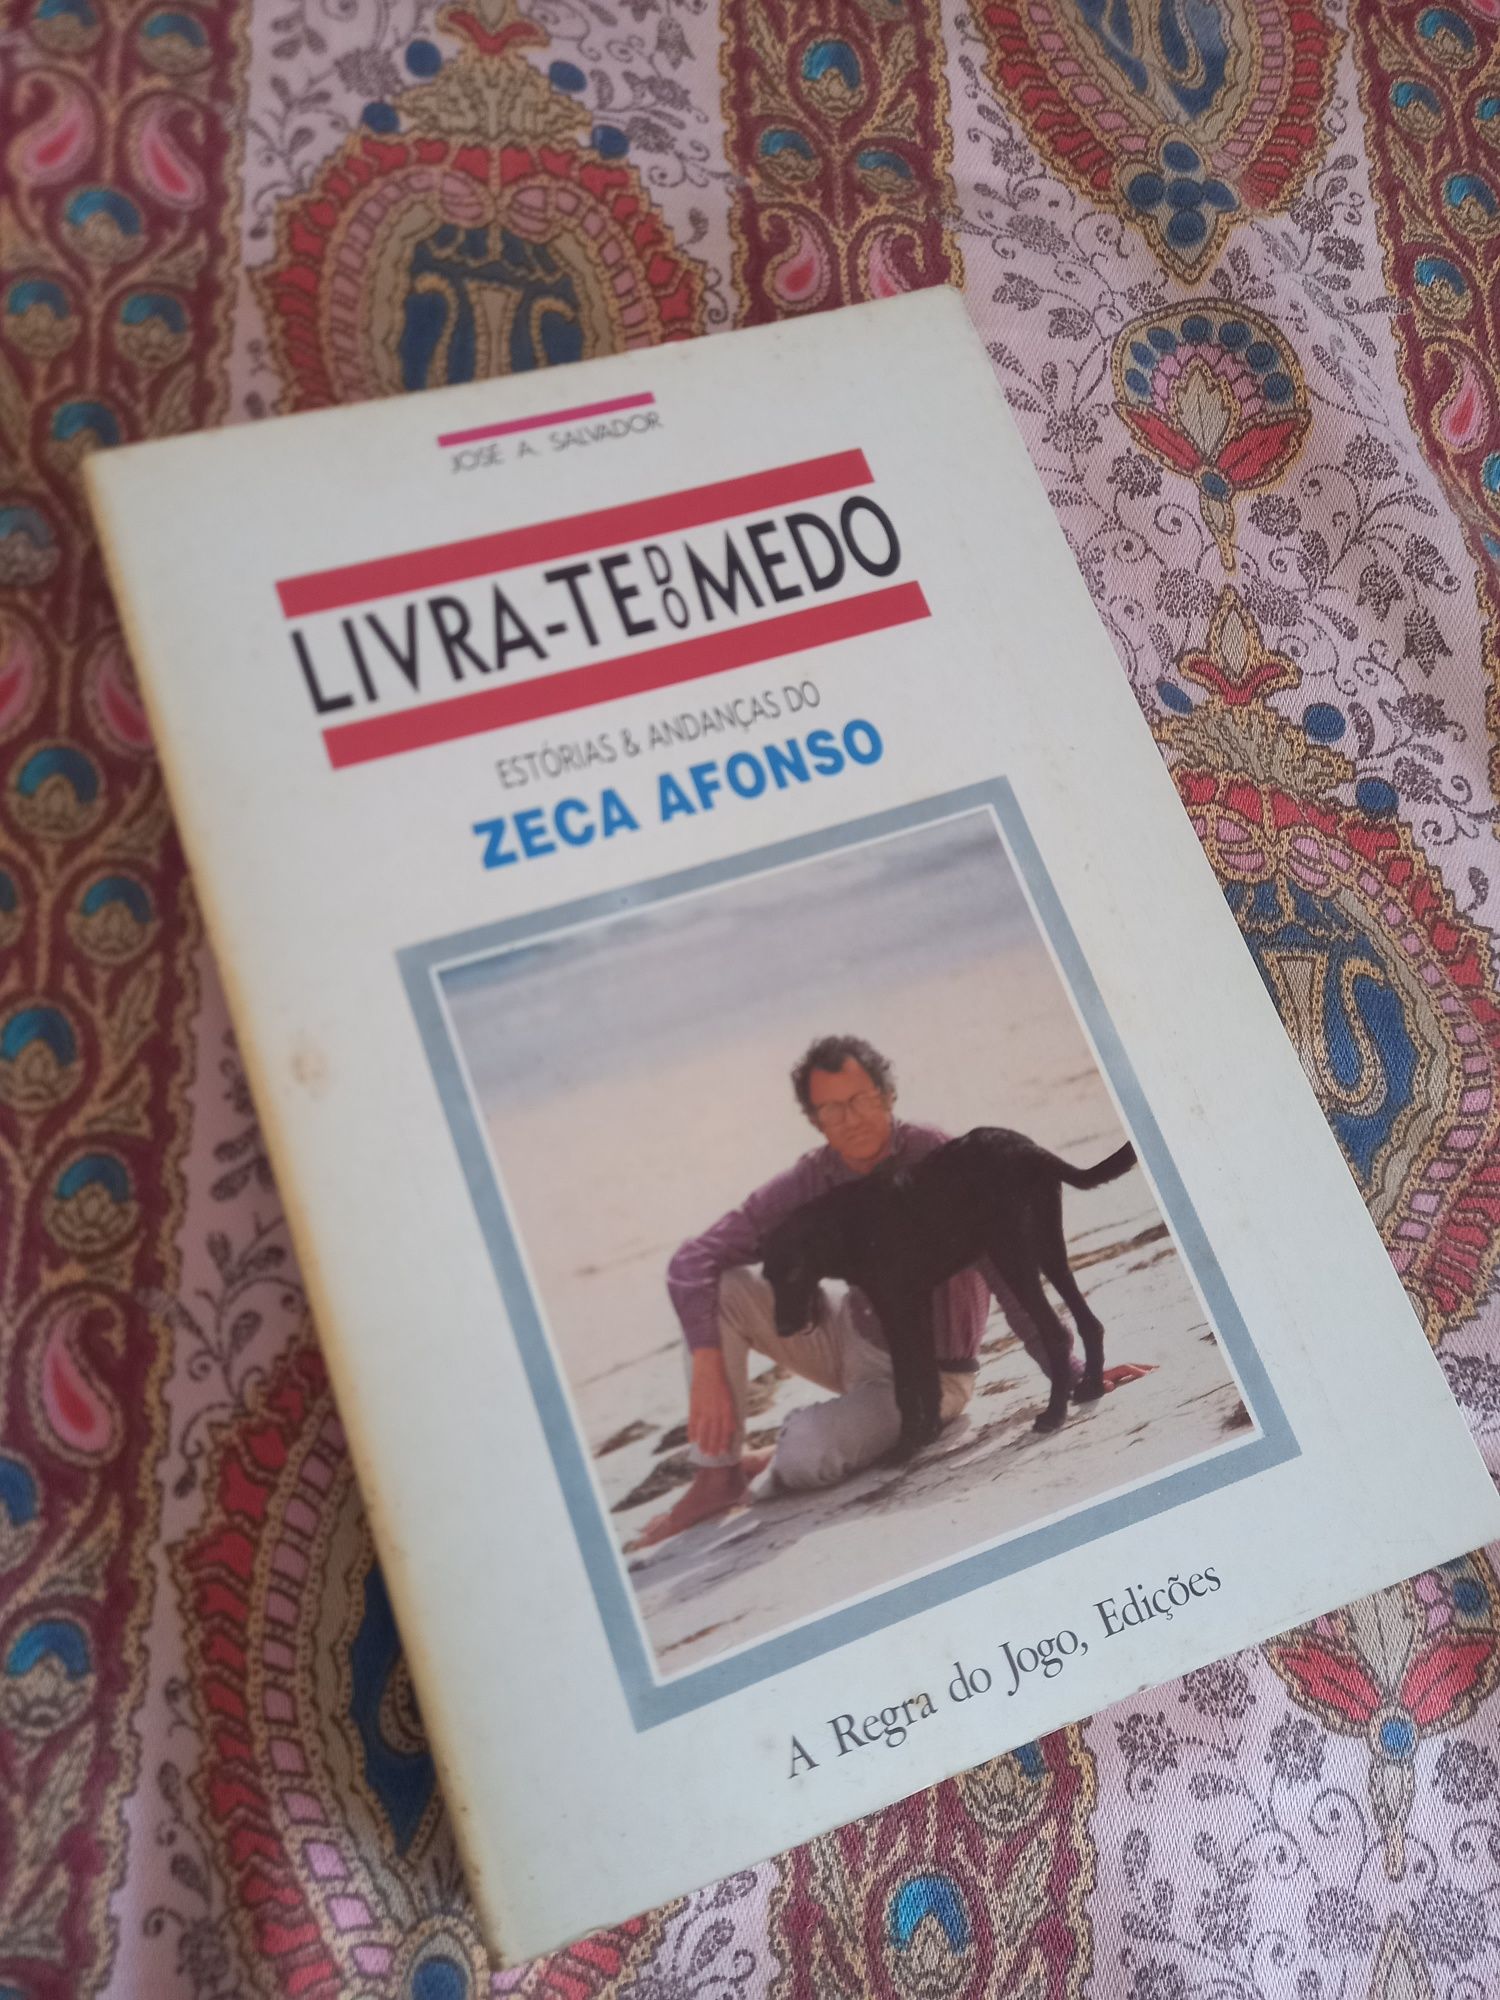 Livra-te do medo : estórias e andanças de Zeca Afonso